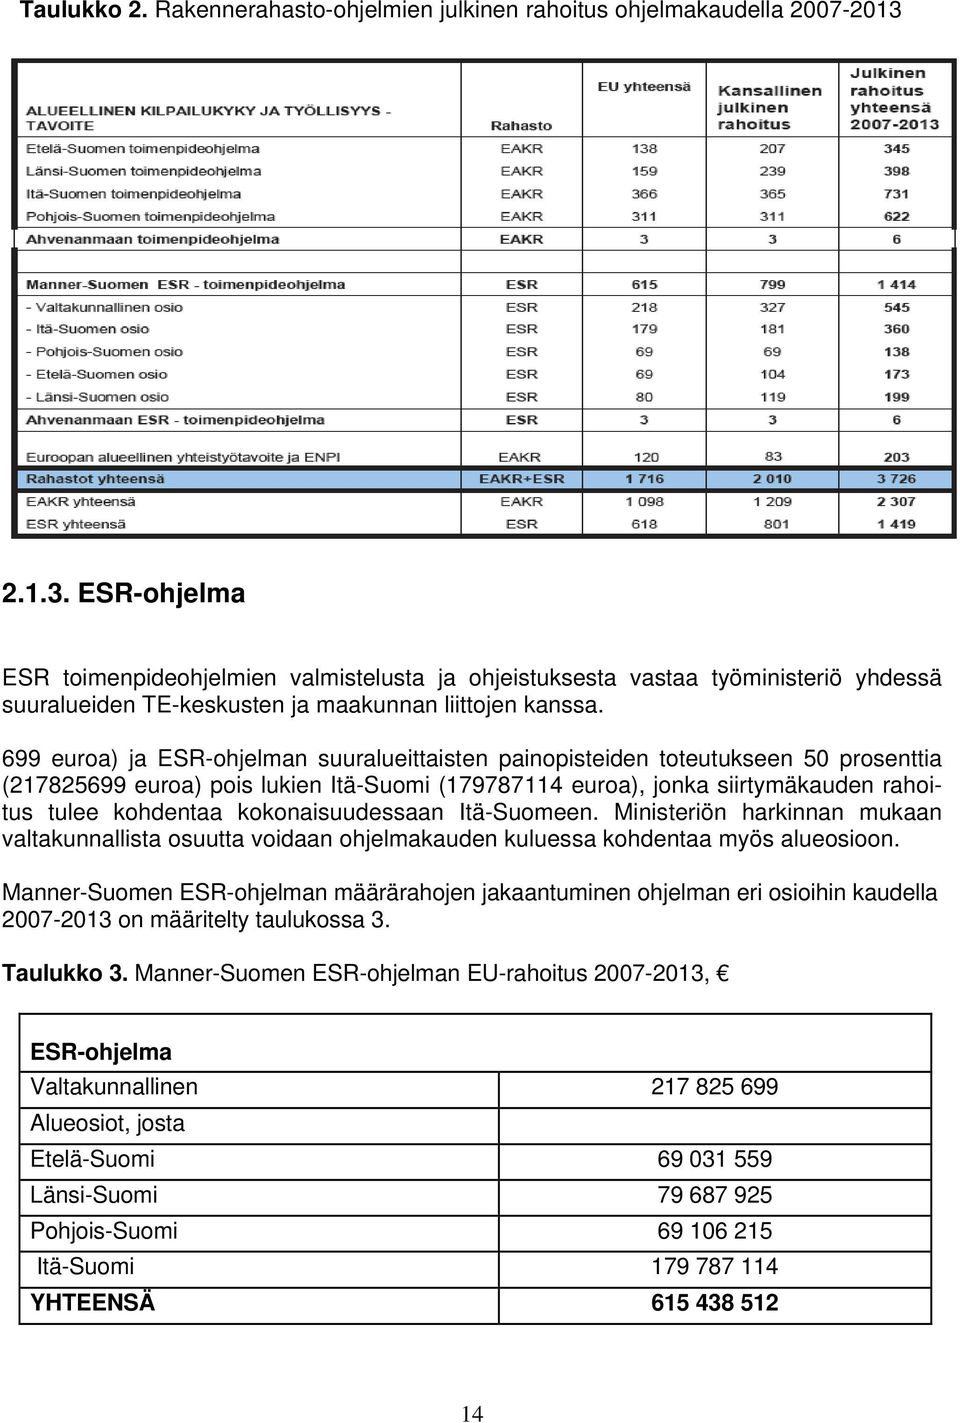 699 euroa) ja ESR-ohjelman suuralueittaisten painopisteiden toteutukseen 50 prosenttia (217825699 euroa) pois lukien Itä-Suomi (179787114 euroa), jonka siirtymäkauden rahoitus tulee kohdentaa